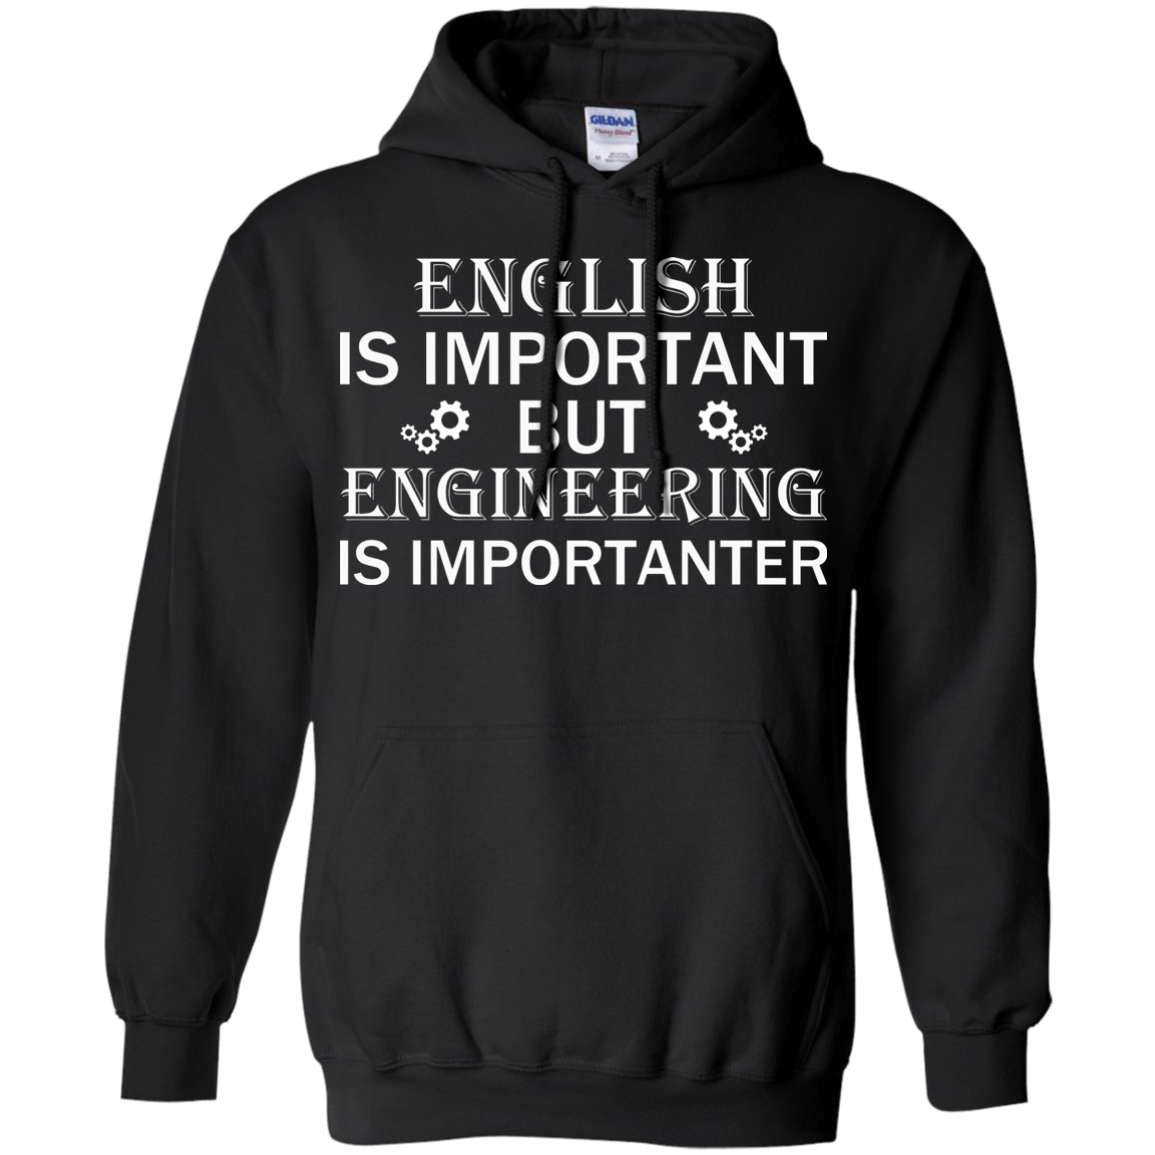 El inglés es importante, pero la ingeniería es más importante